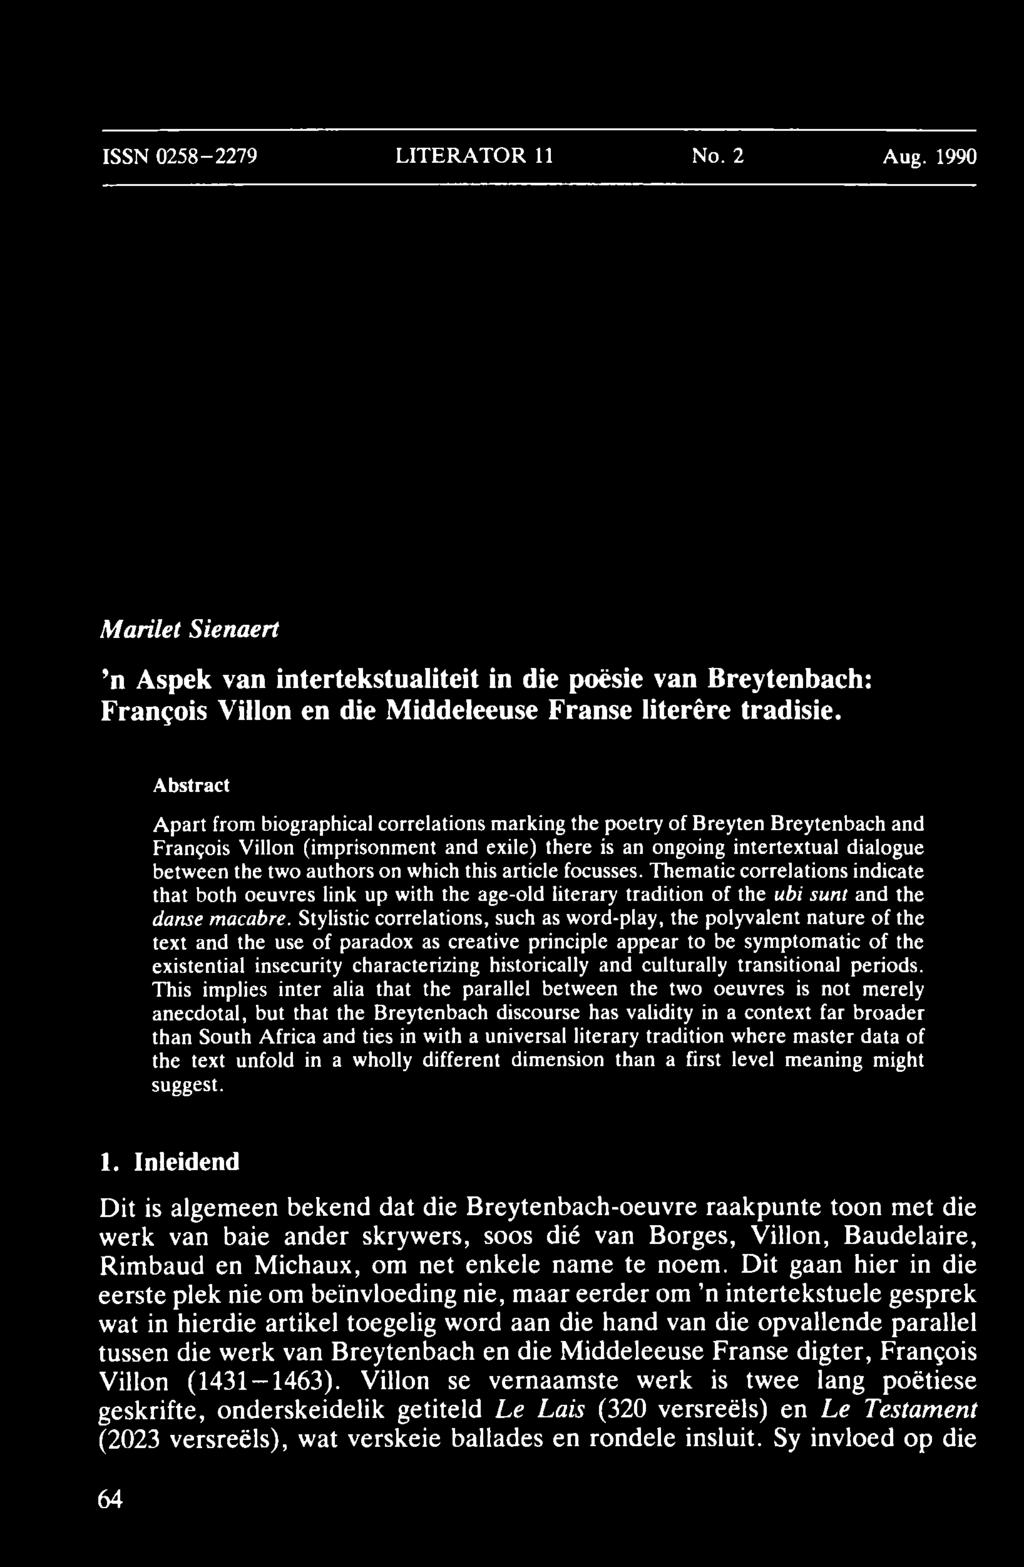 ISSN 0258-2279 LITERA TO R 11 No. 2 Aug. 1990 Marilet Sienaert n Aspek van intertekstualiteit in die poësie van Breytenbach: Francois Villon en die Middeleeuse Franse literêre tradisie.